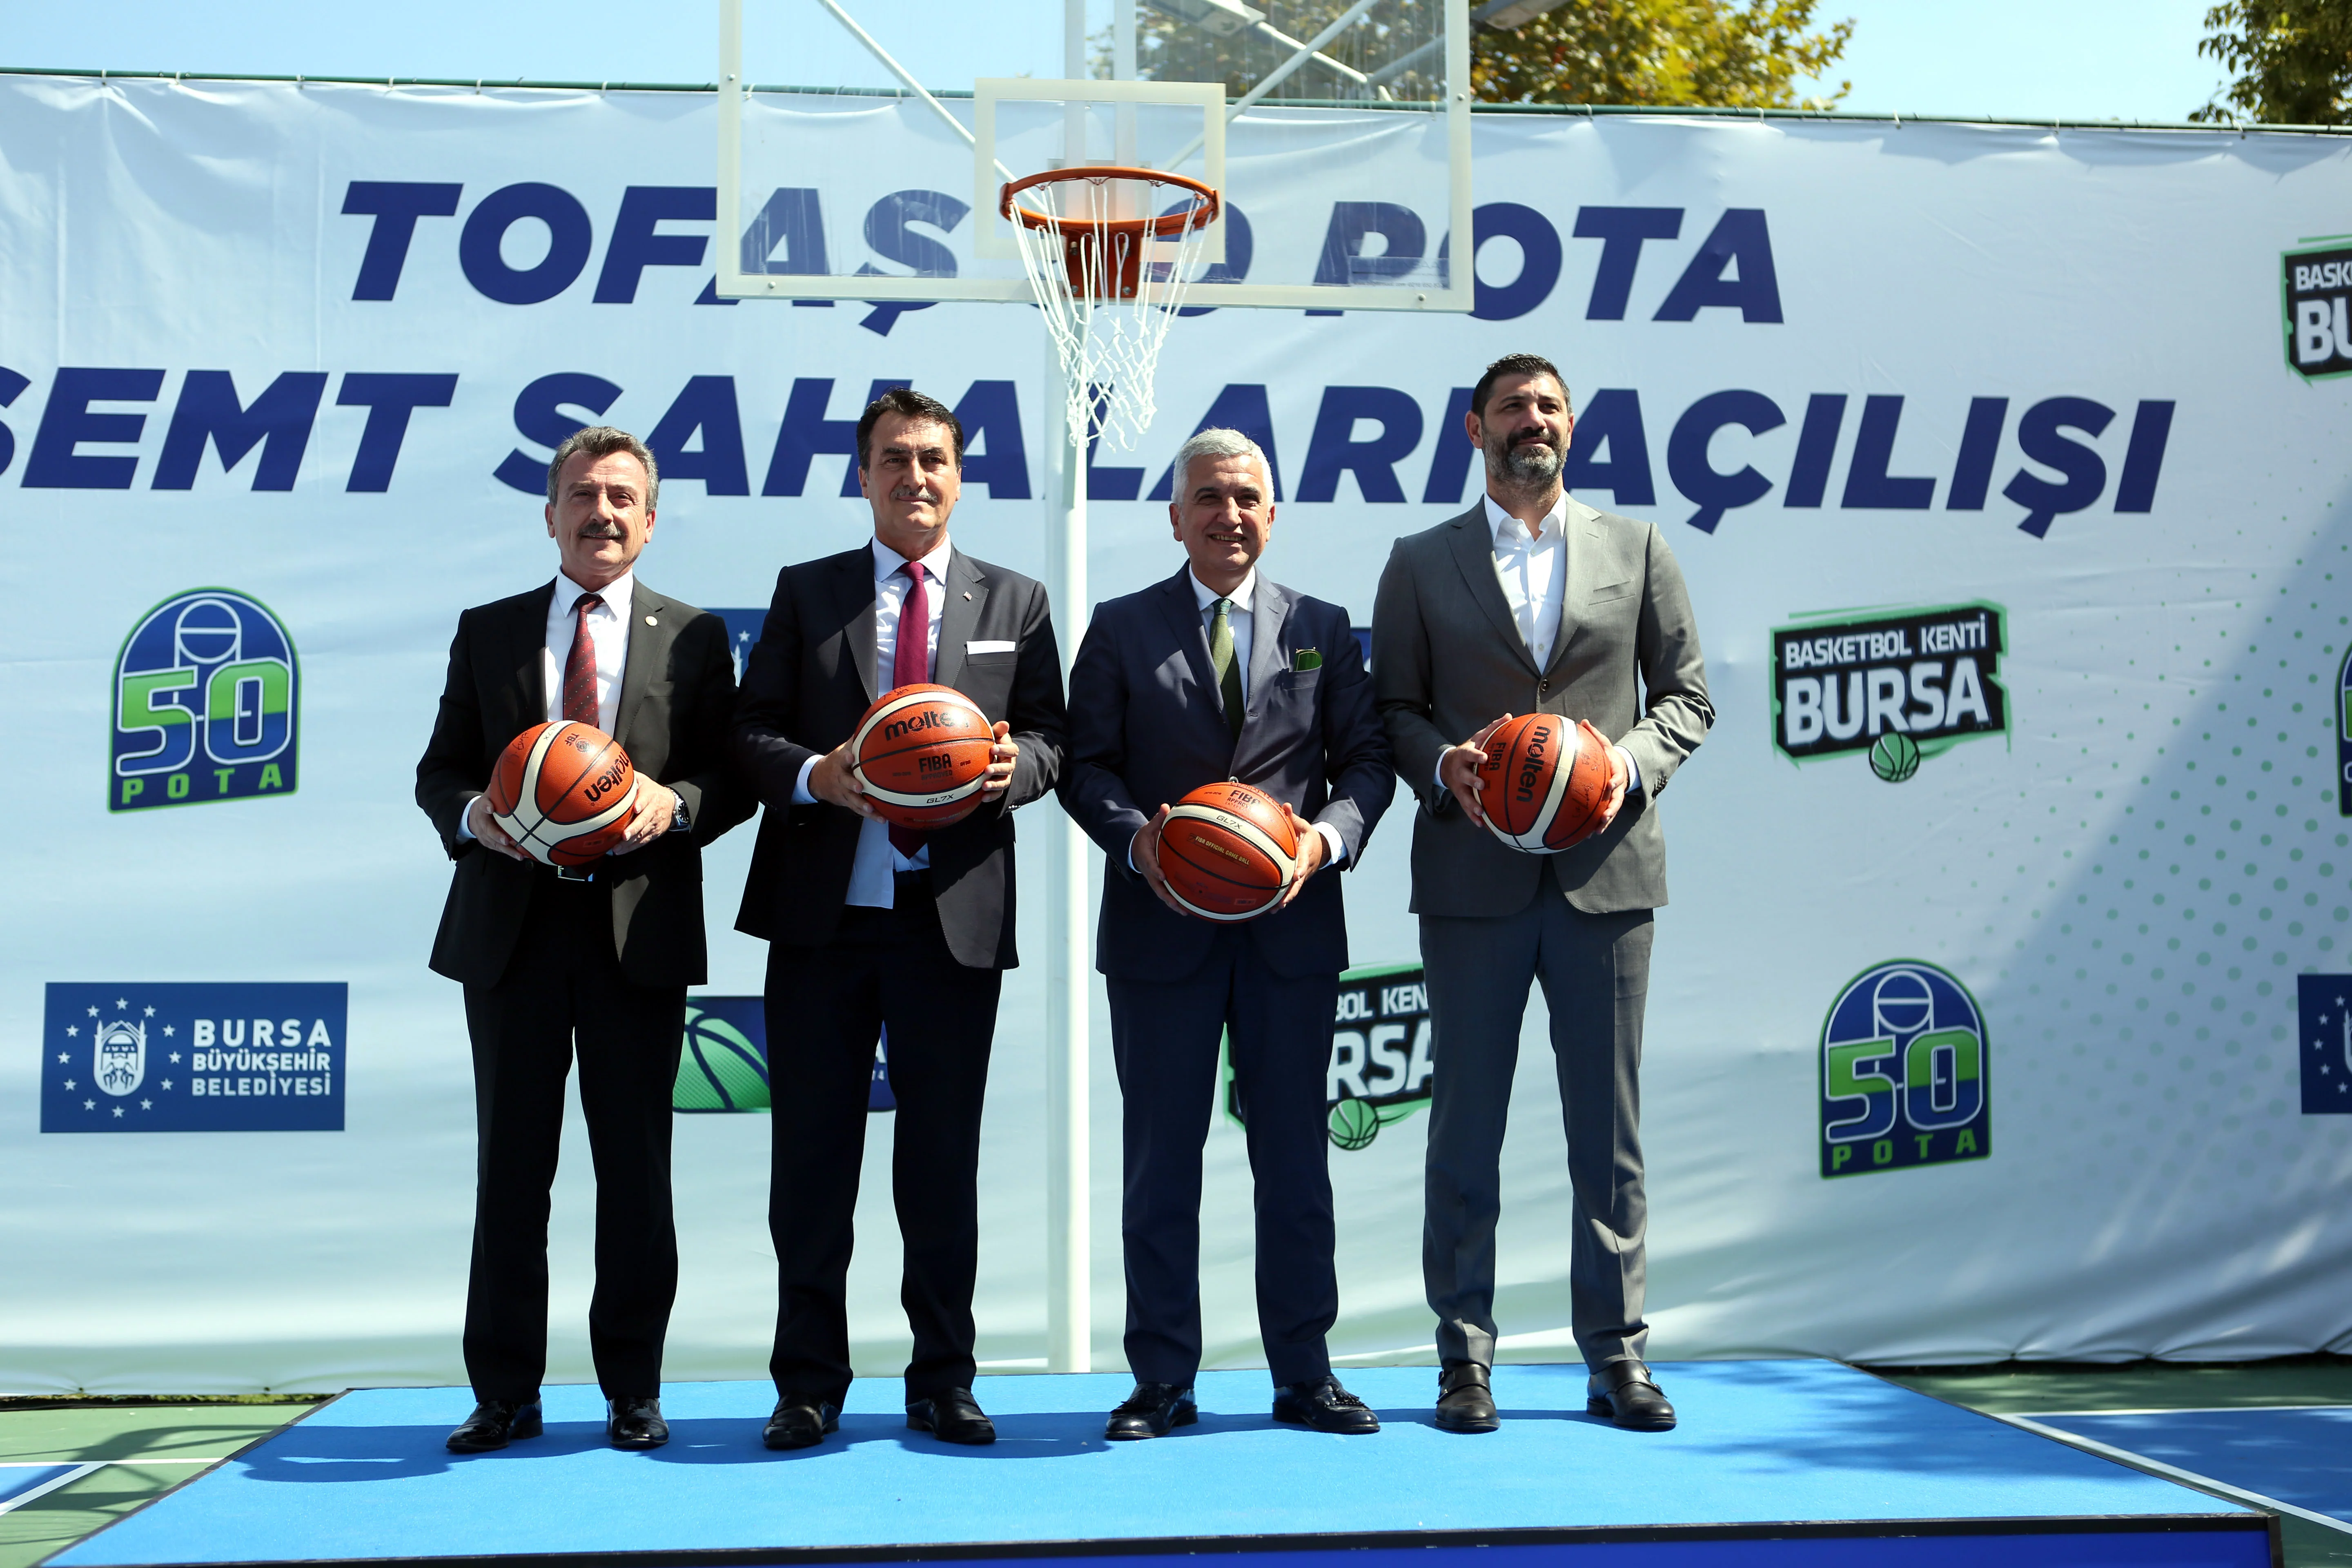 TOFAŞ Spor Kulübü'nün '50 Pota' projesi hayata geçirilidi